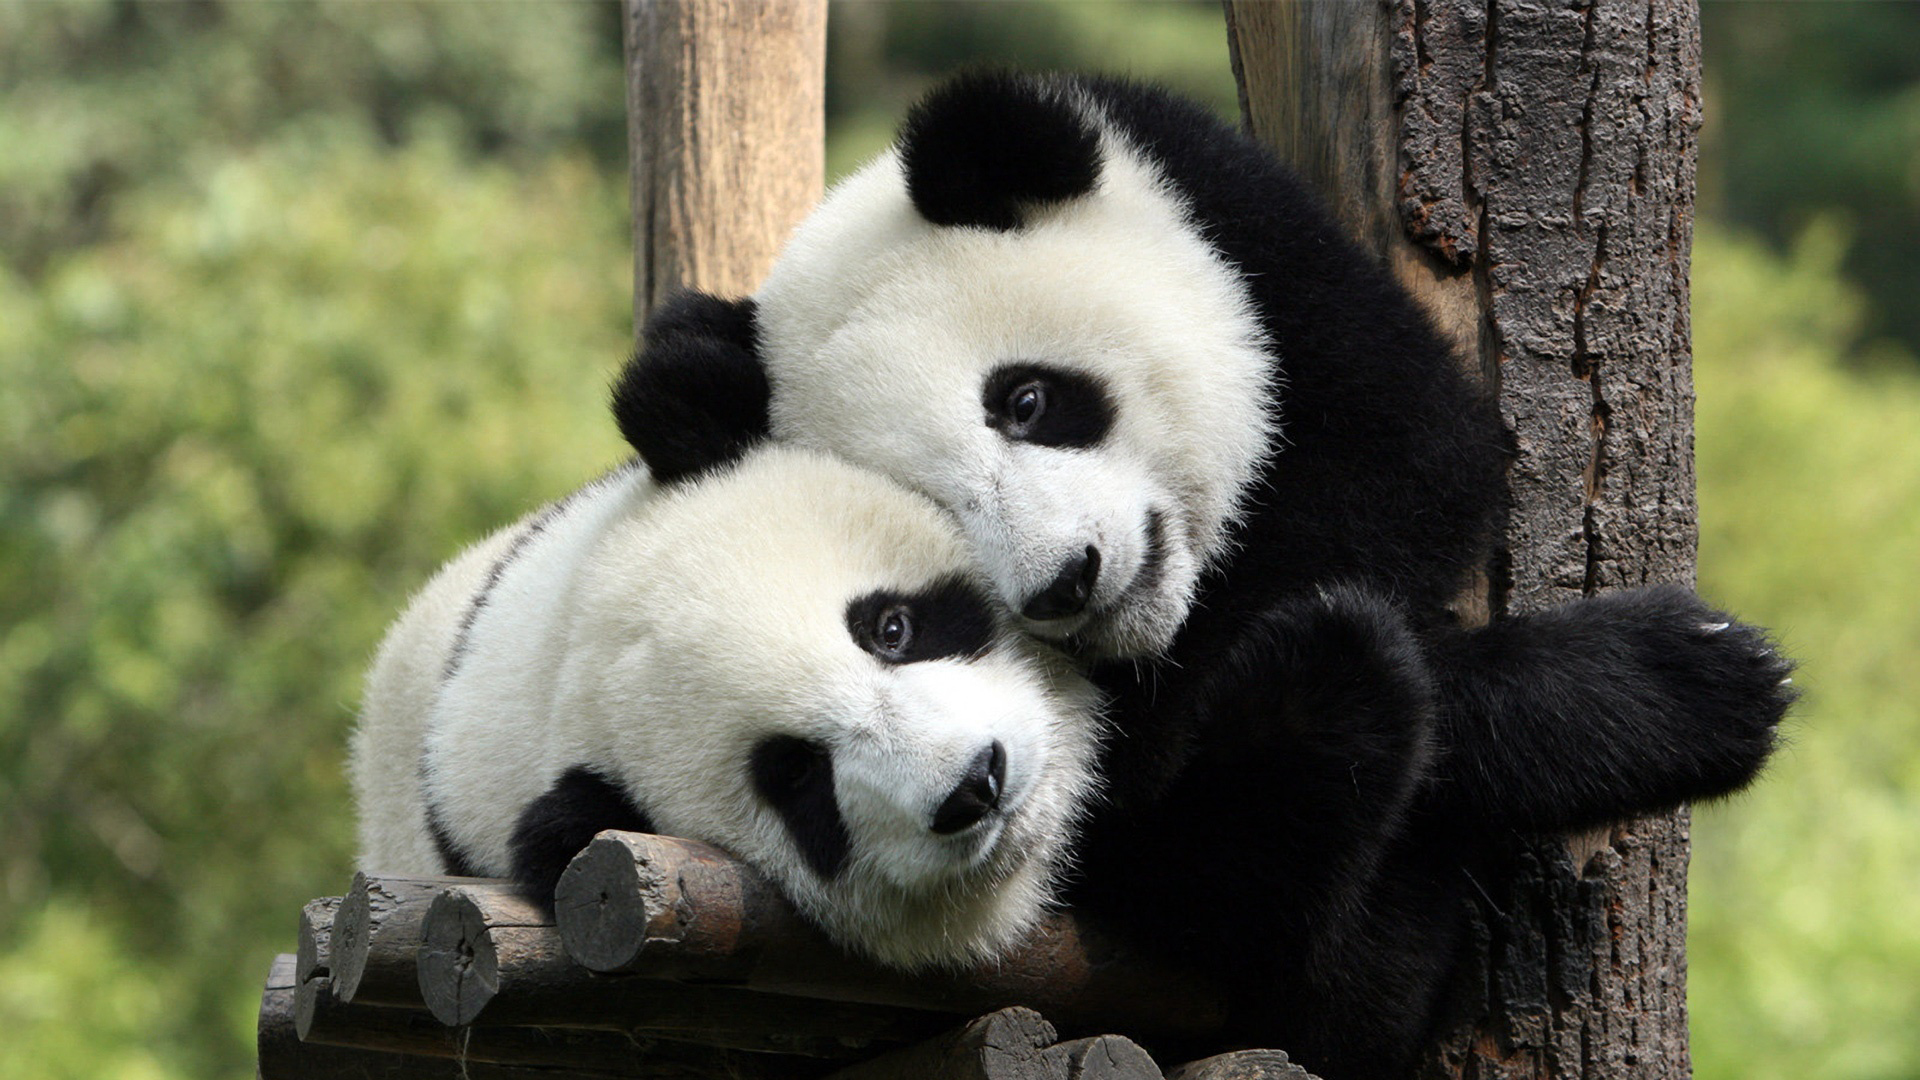 Super Cute Full HD Pandas Wallpaper Animal Hugs